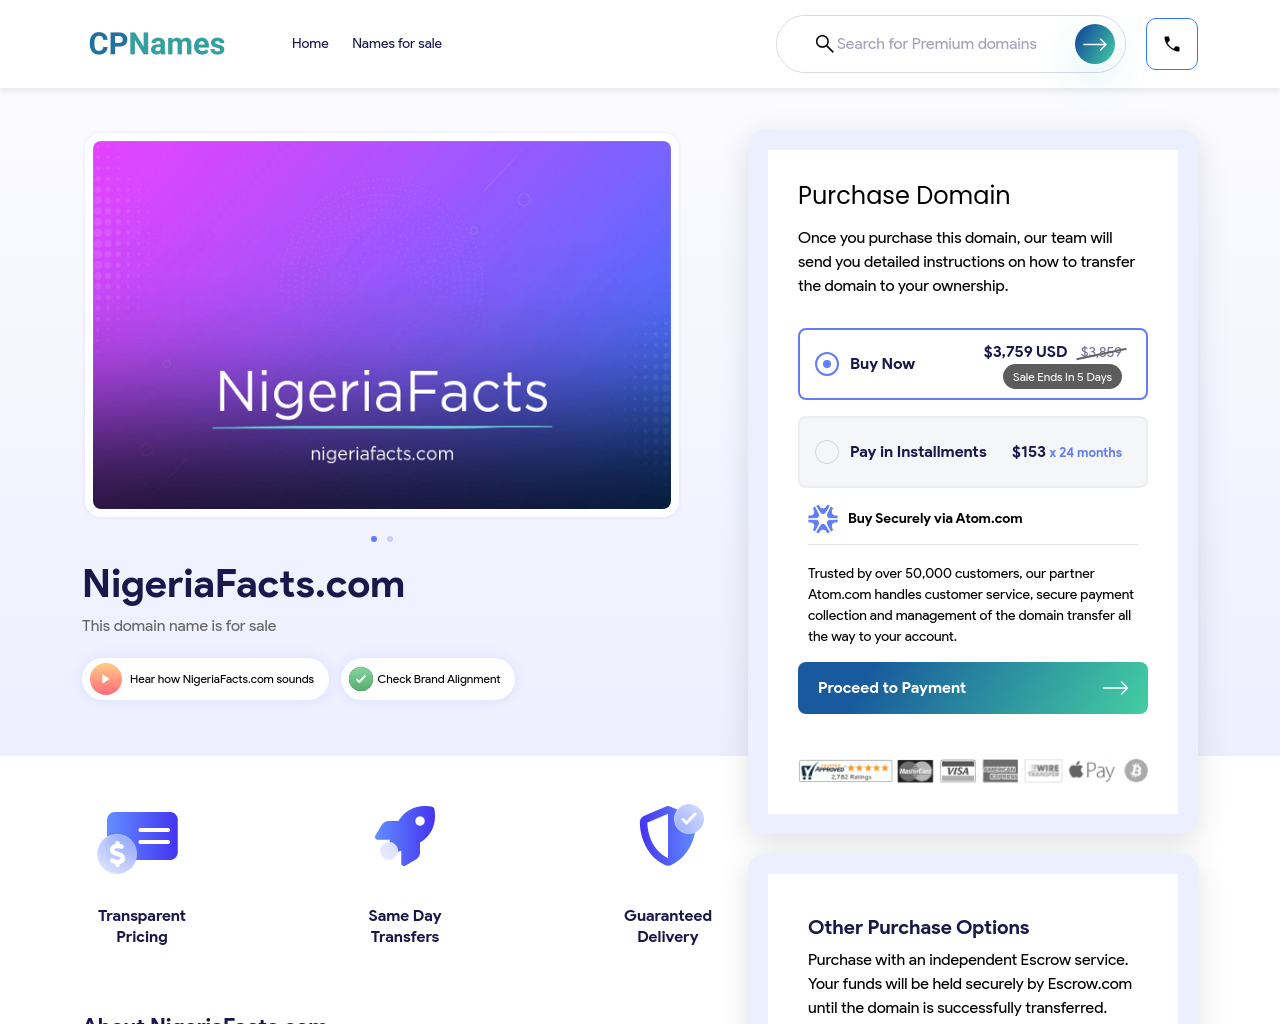 nigeriafacts.com